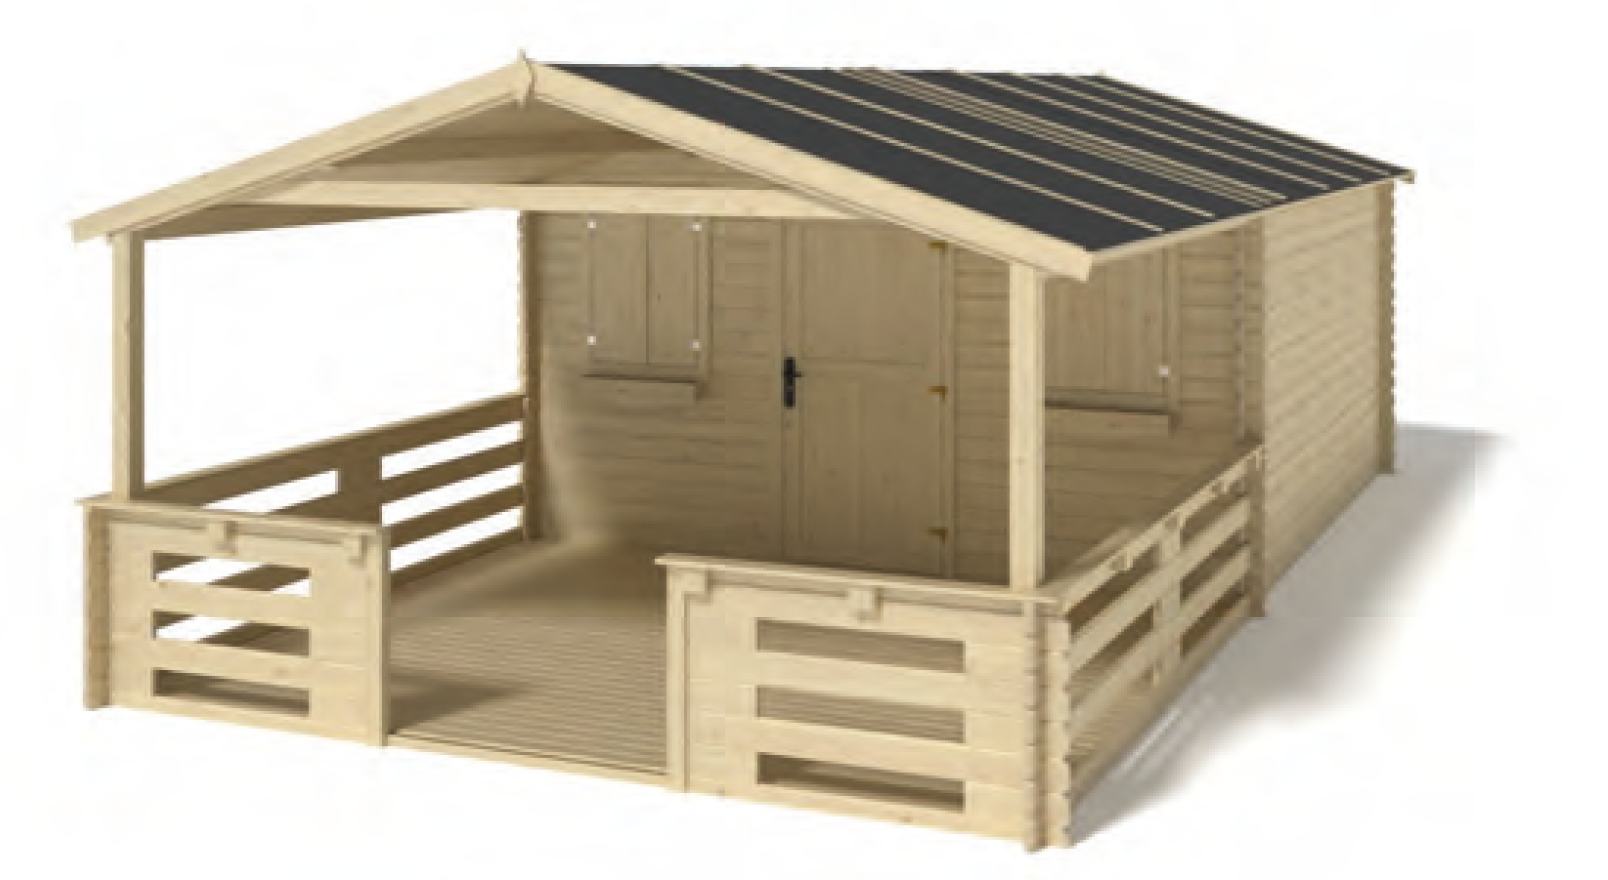 Sierra Nevada Garden Shelter with porch option 400 x 400 x 251 cm